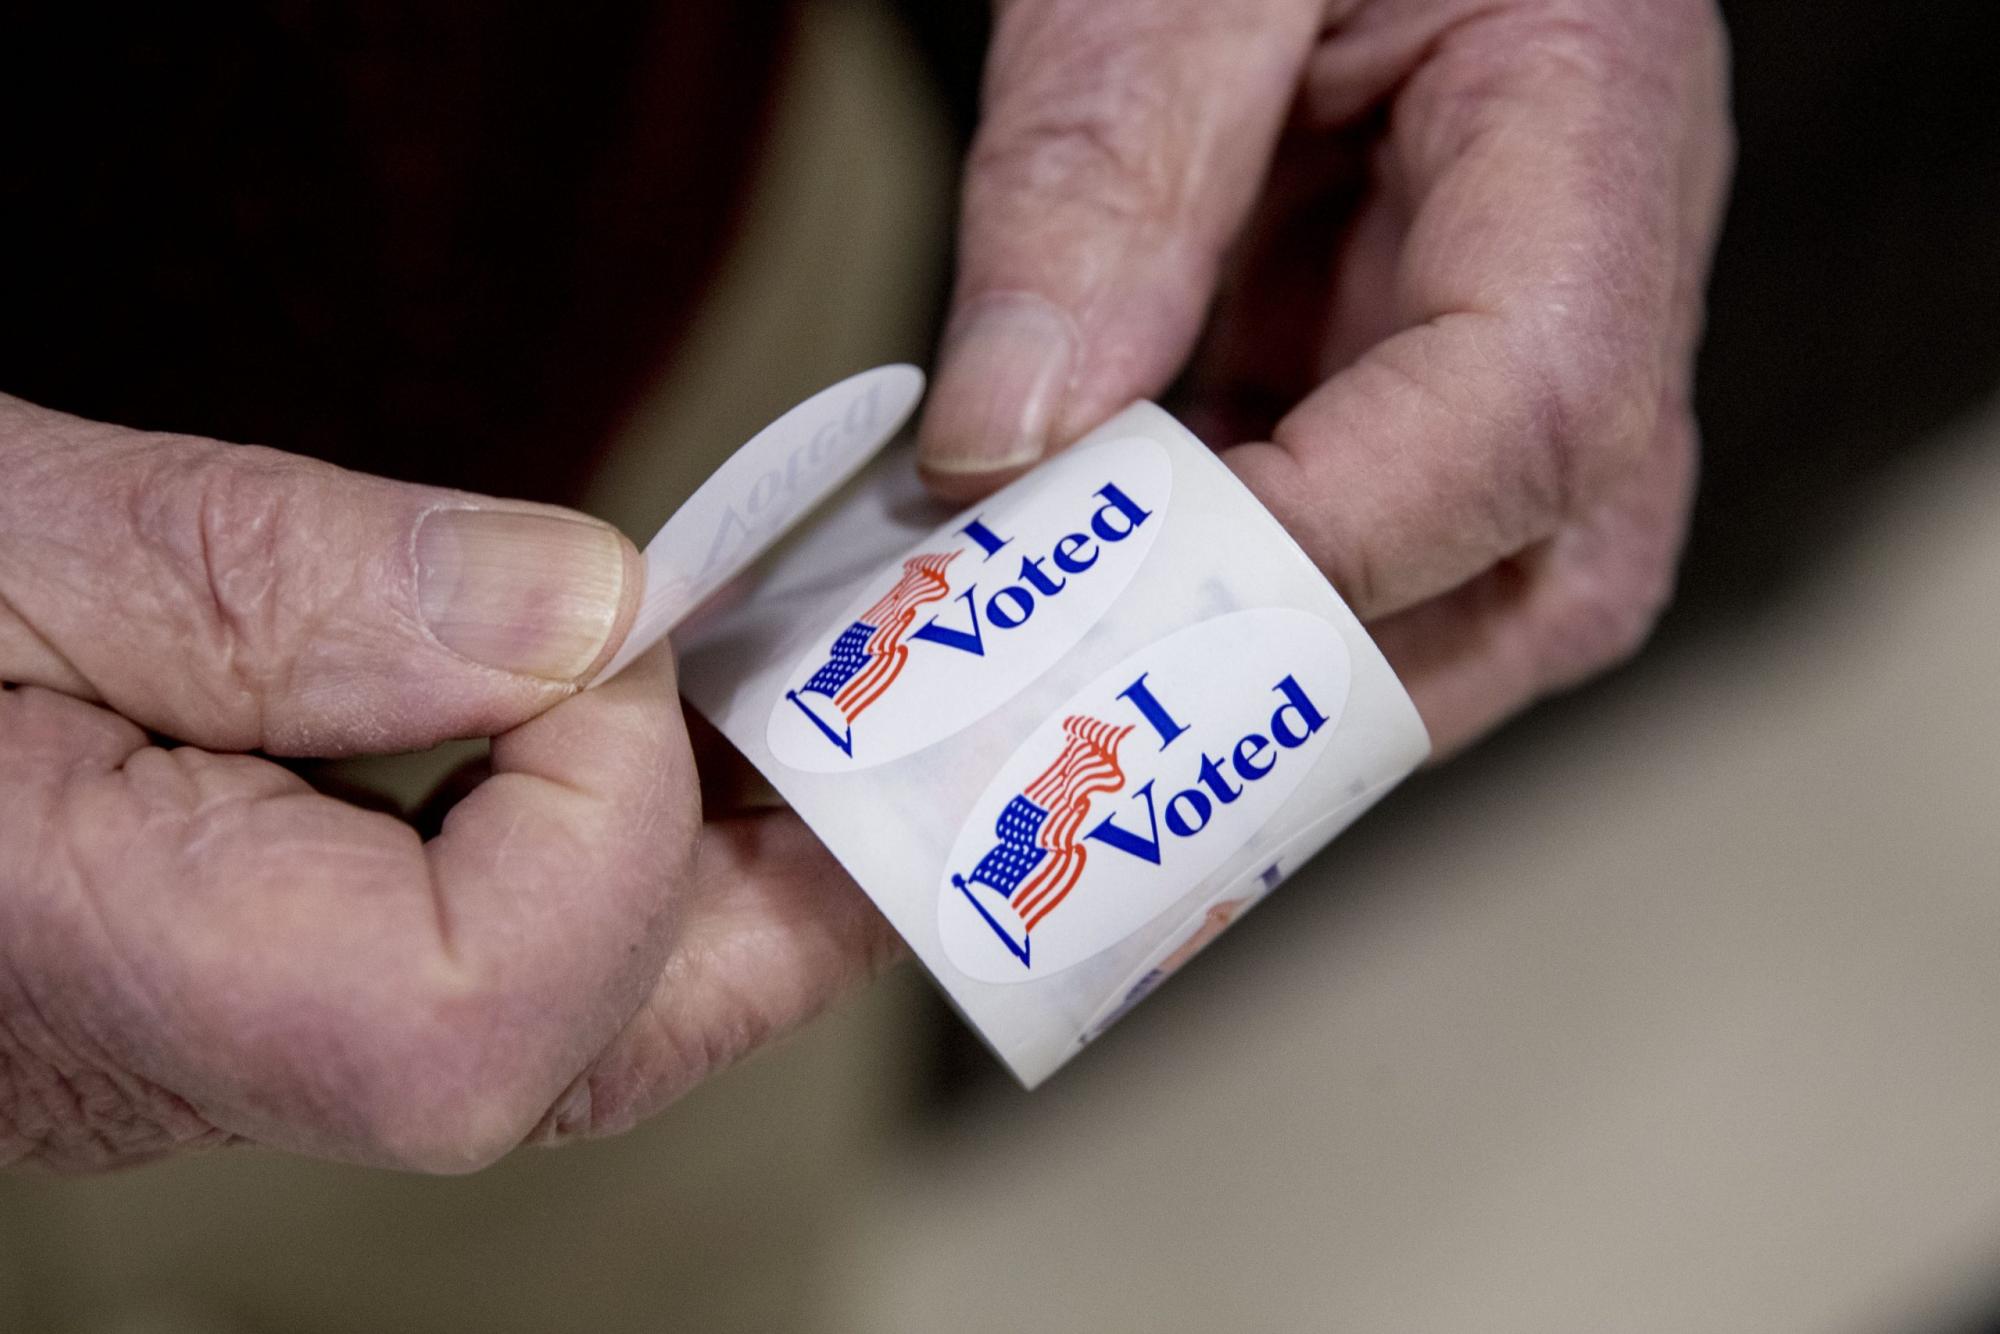 В Илинойс се задават изборите с най-малка конкуренция между кандидатите от 20 години насам